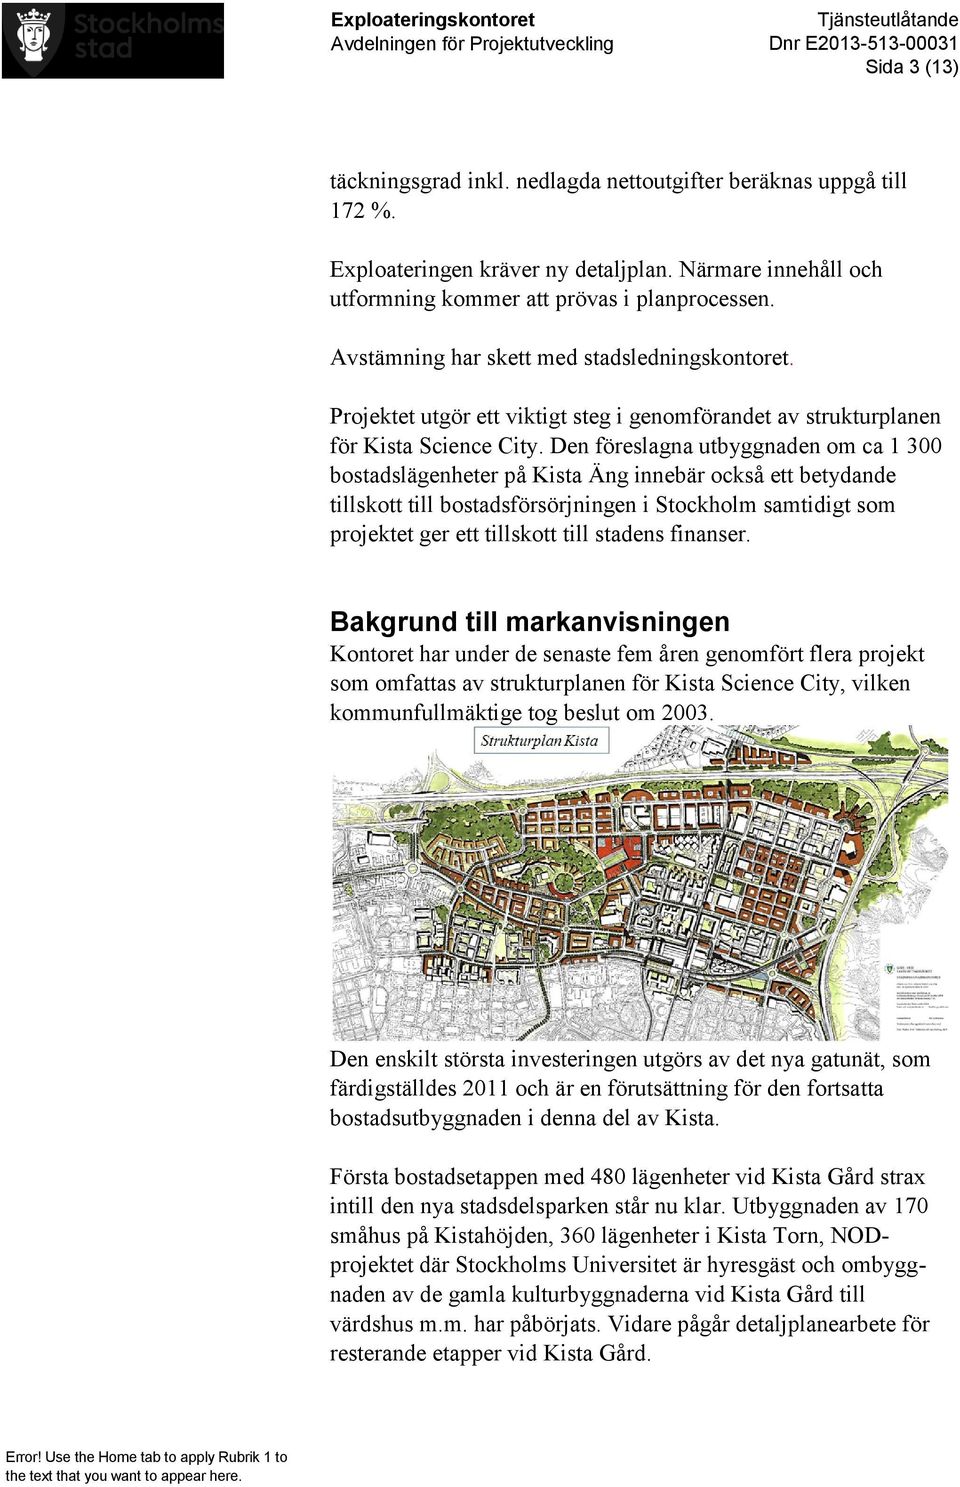 Den föreslagna utbyggnaden om ca 1 300 bostadslägenheter på Kista Äng innebär också ett betydande tillskott till bostadsförsörjningen i Stockholm samtidigt som projektet ger ett tillskott till